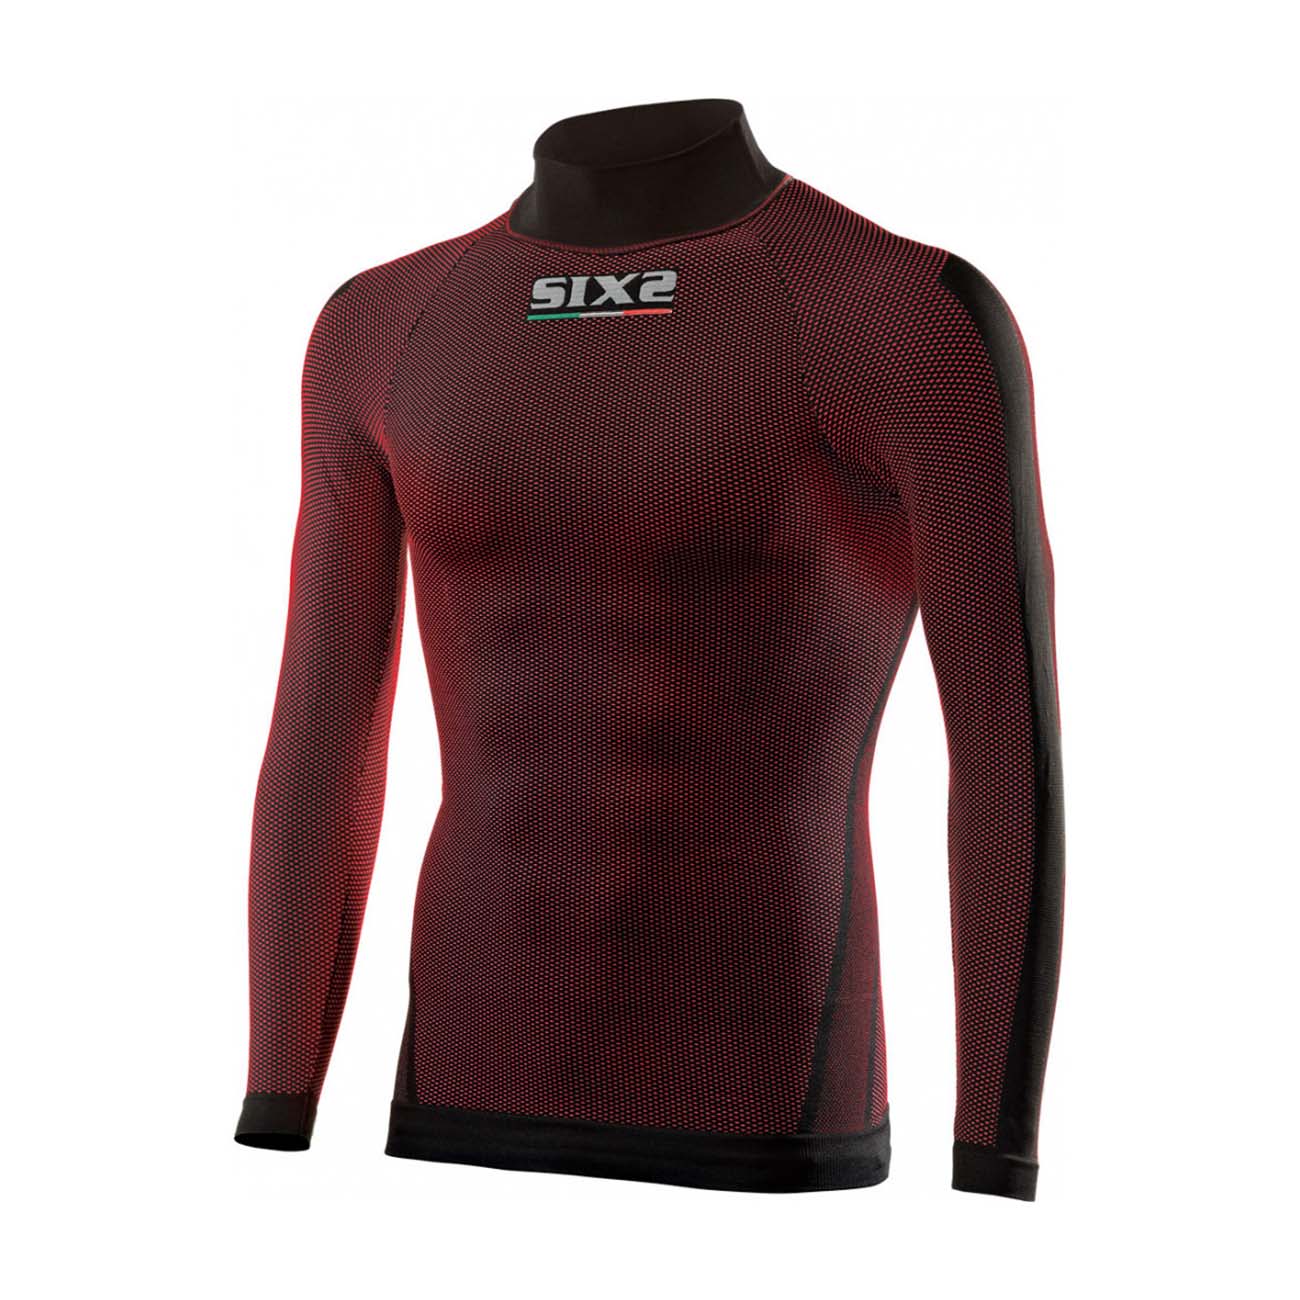 
                SIX2 Cyklistické tričko s dlhým rukávom - TS2 II - červená/bordová XL-2XL
            